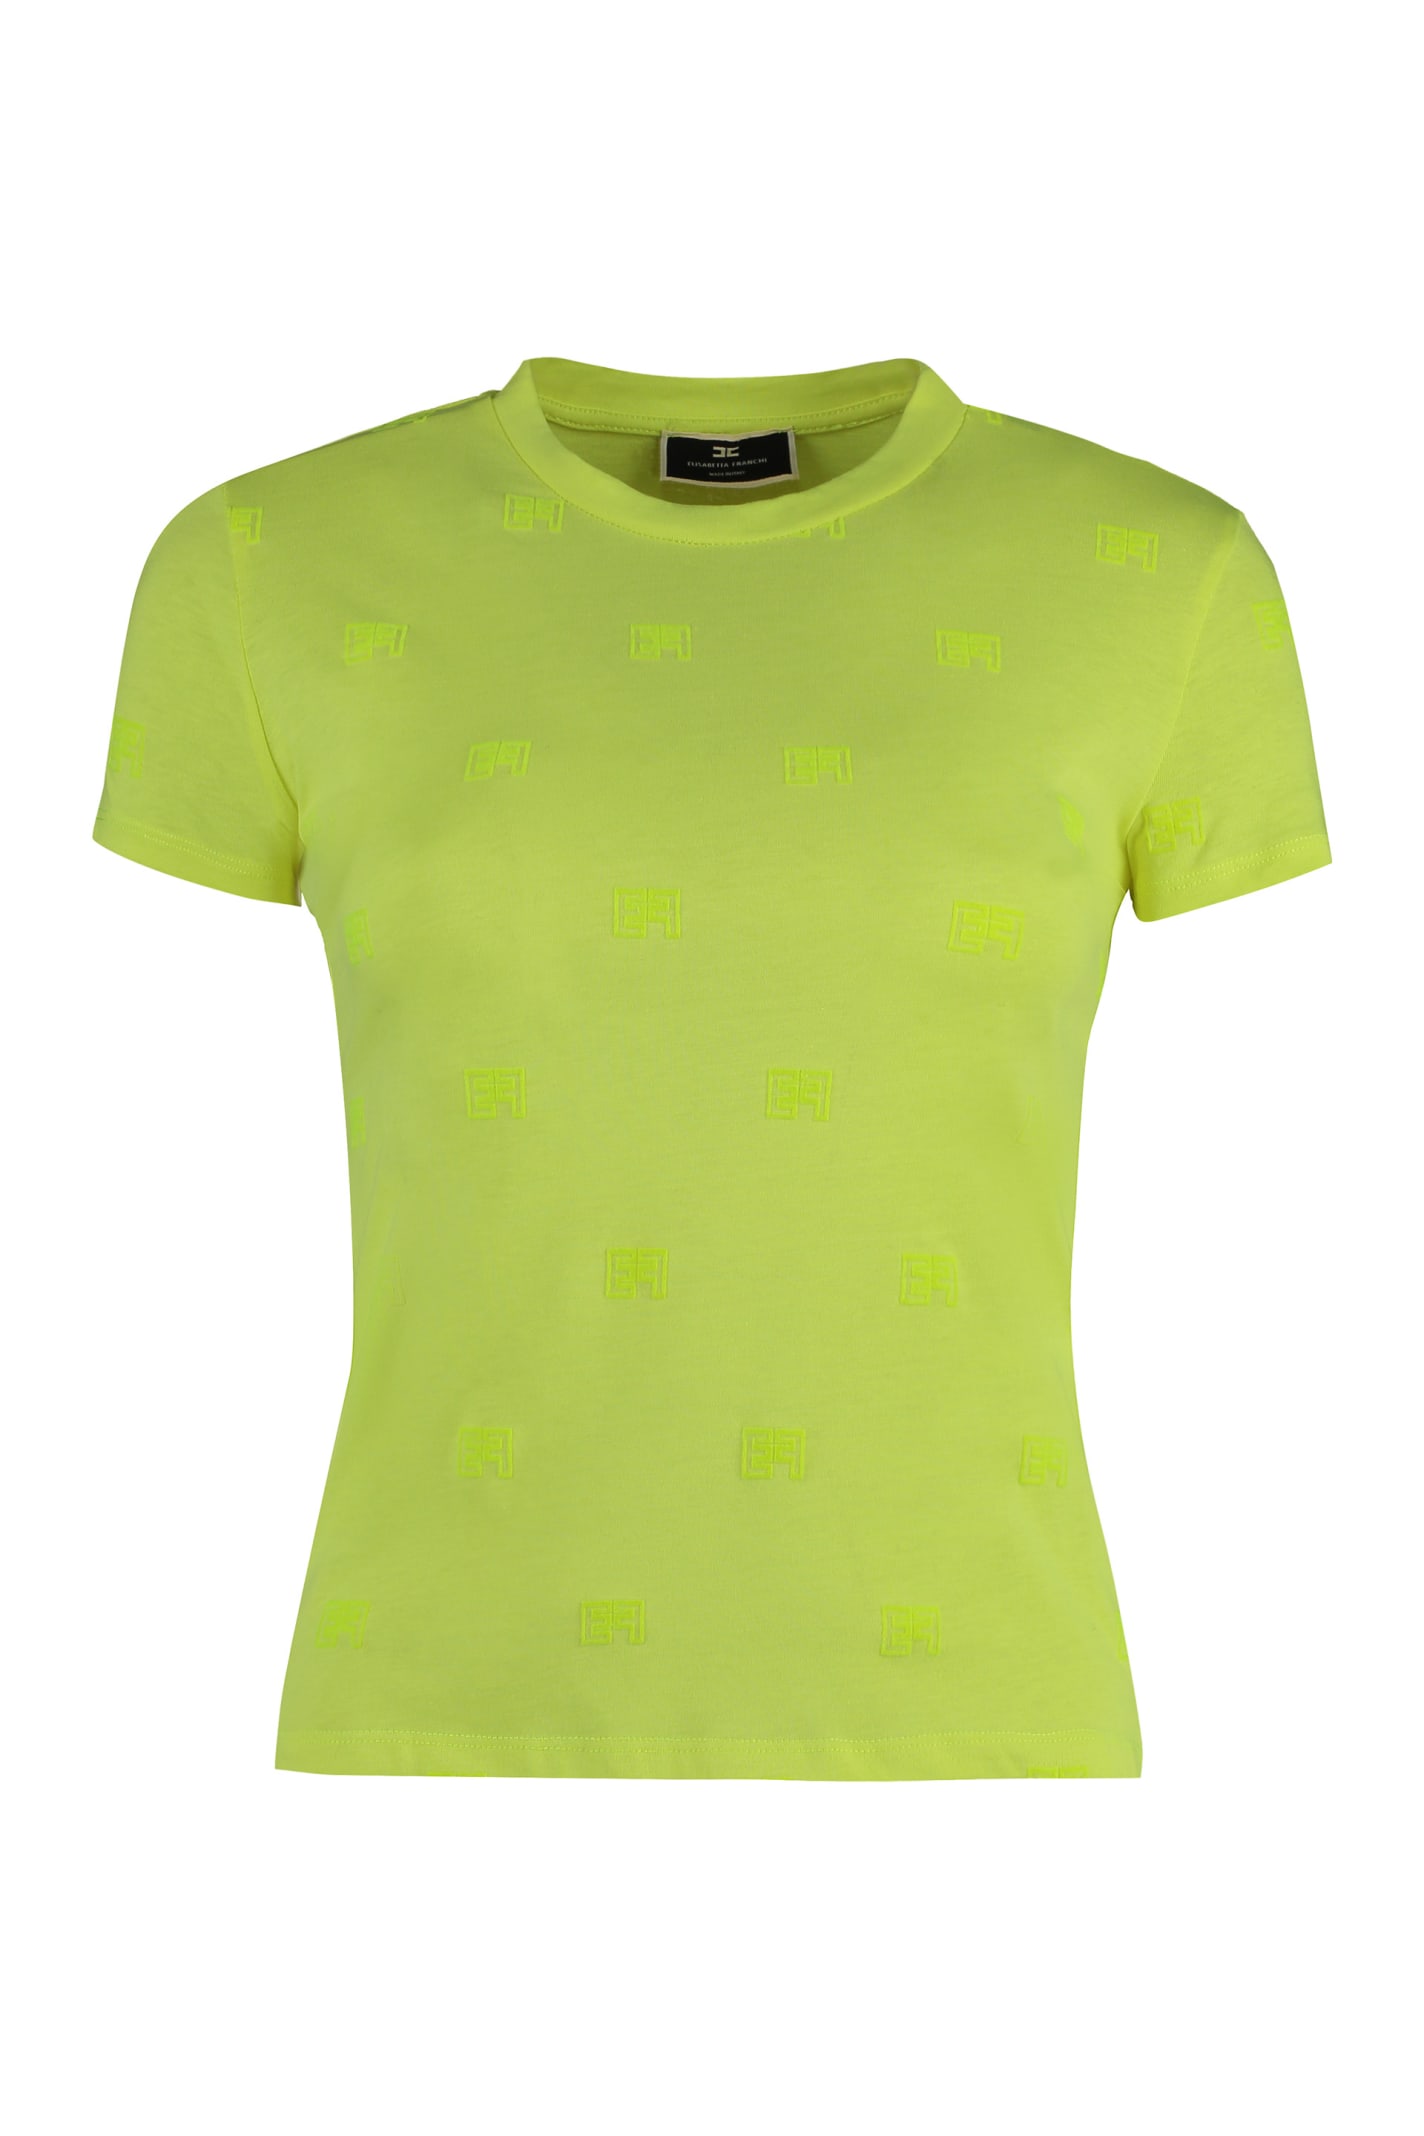 Elisabetta Franchi Cotton Crew-neck T-shirt In Green